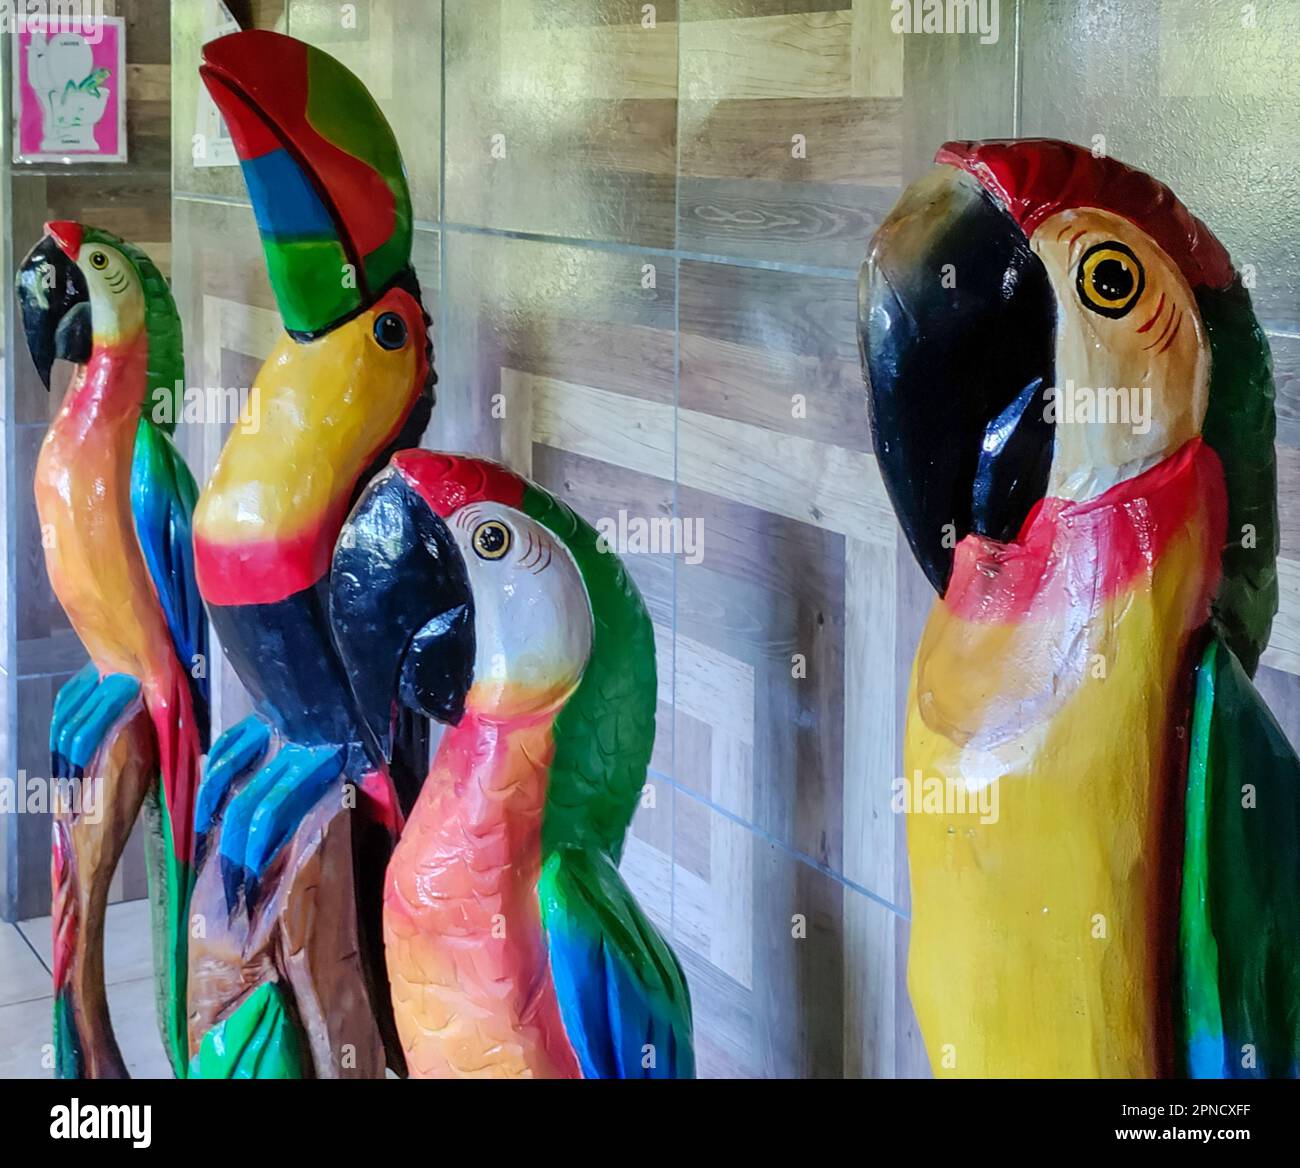 Muelle San Carlos, Costa Rica – in einem Souvenirladen werden bemalte Holzschnitzereien aus Aras und einem Tukan verkauft. Stockfoto